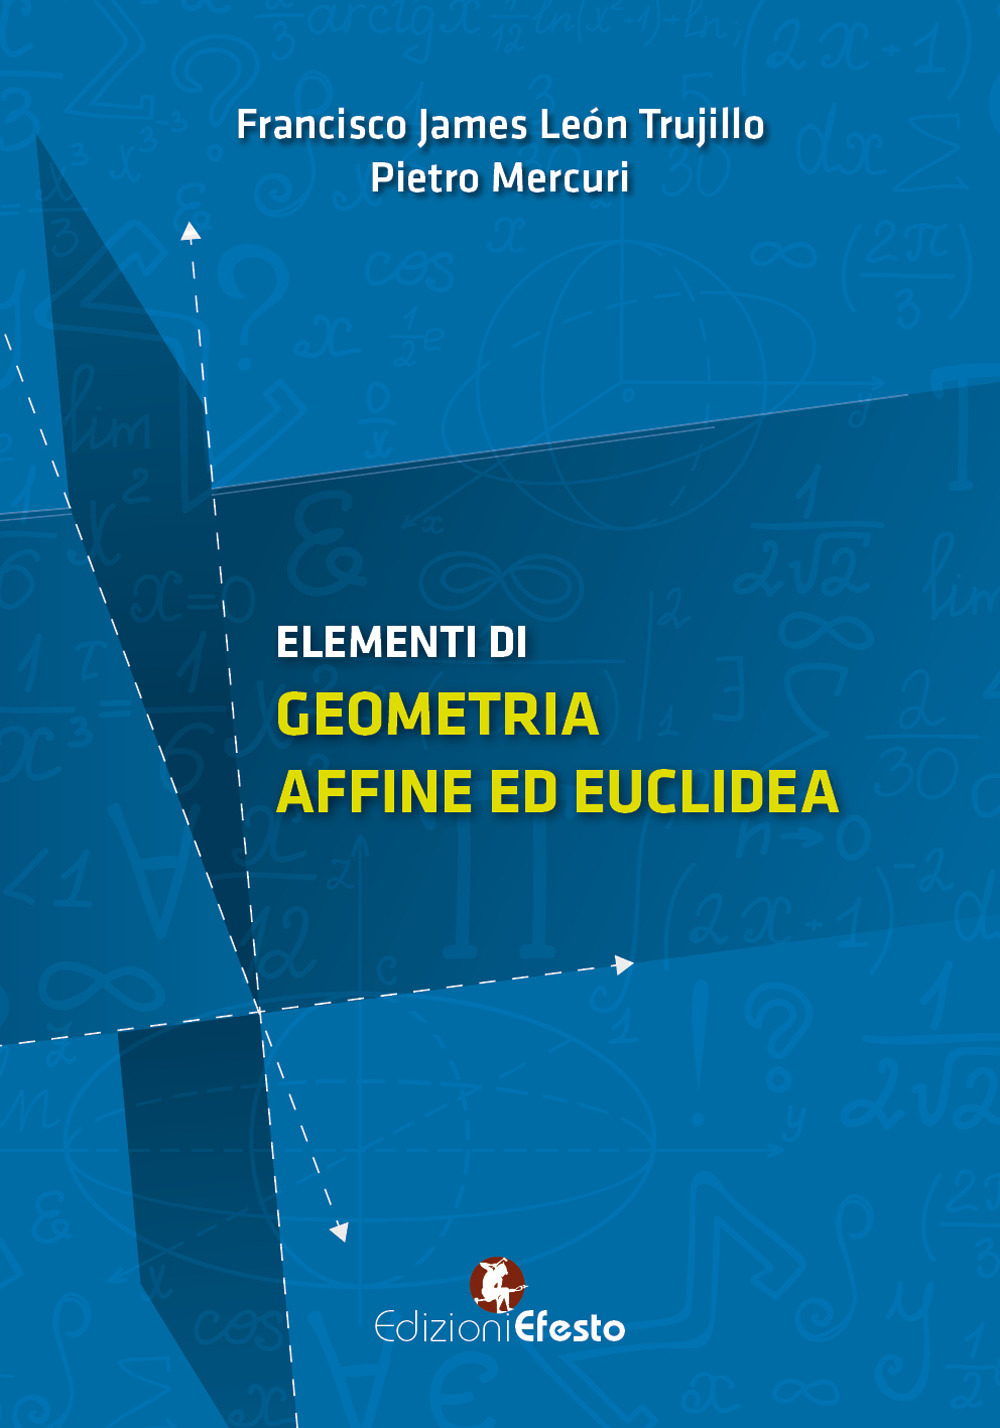 Image of Elementi di geometria affine ed euclidea